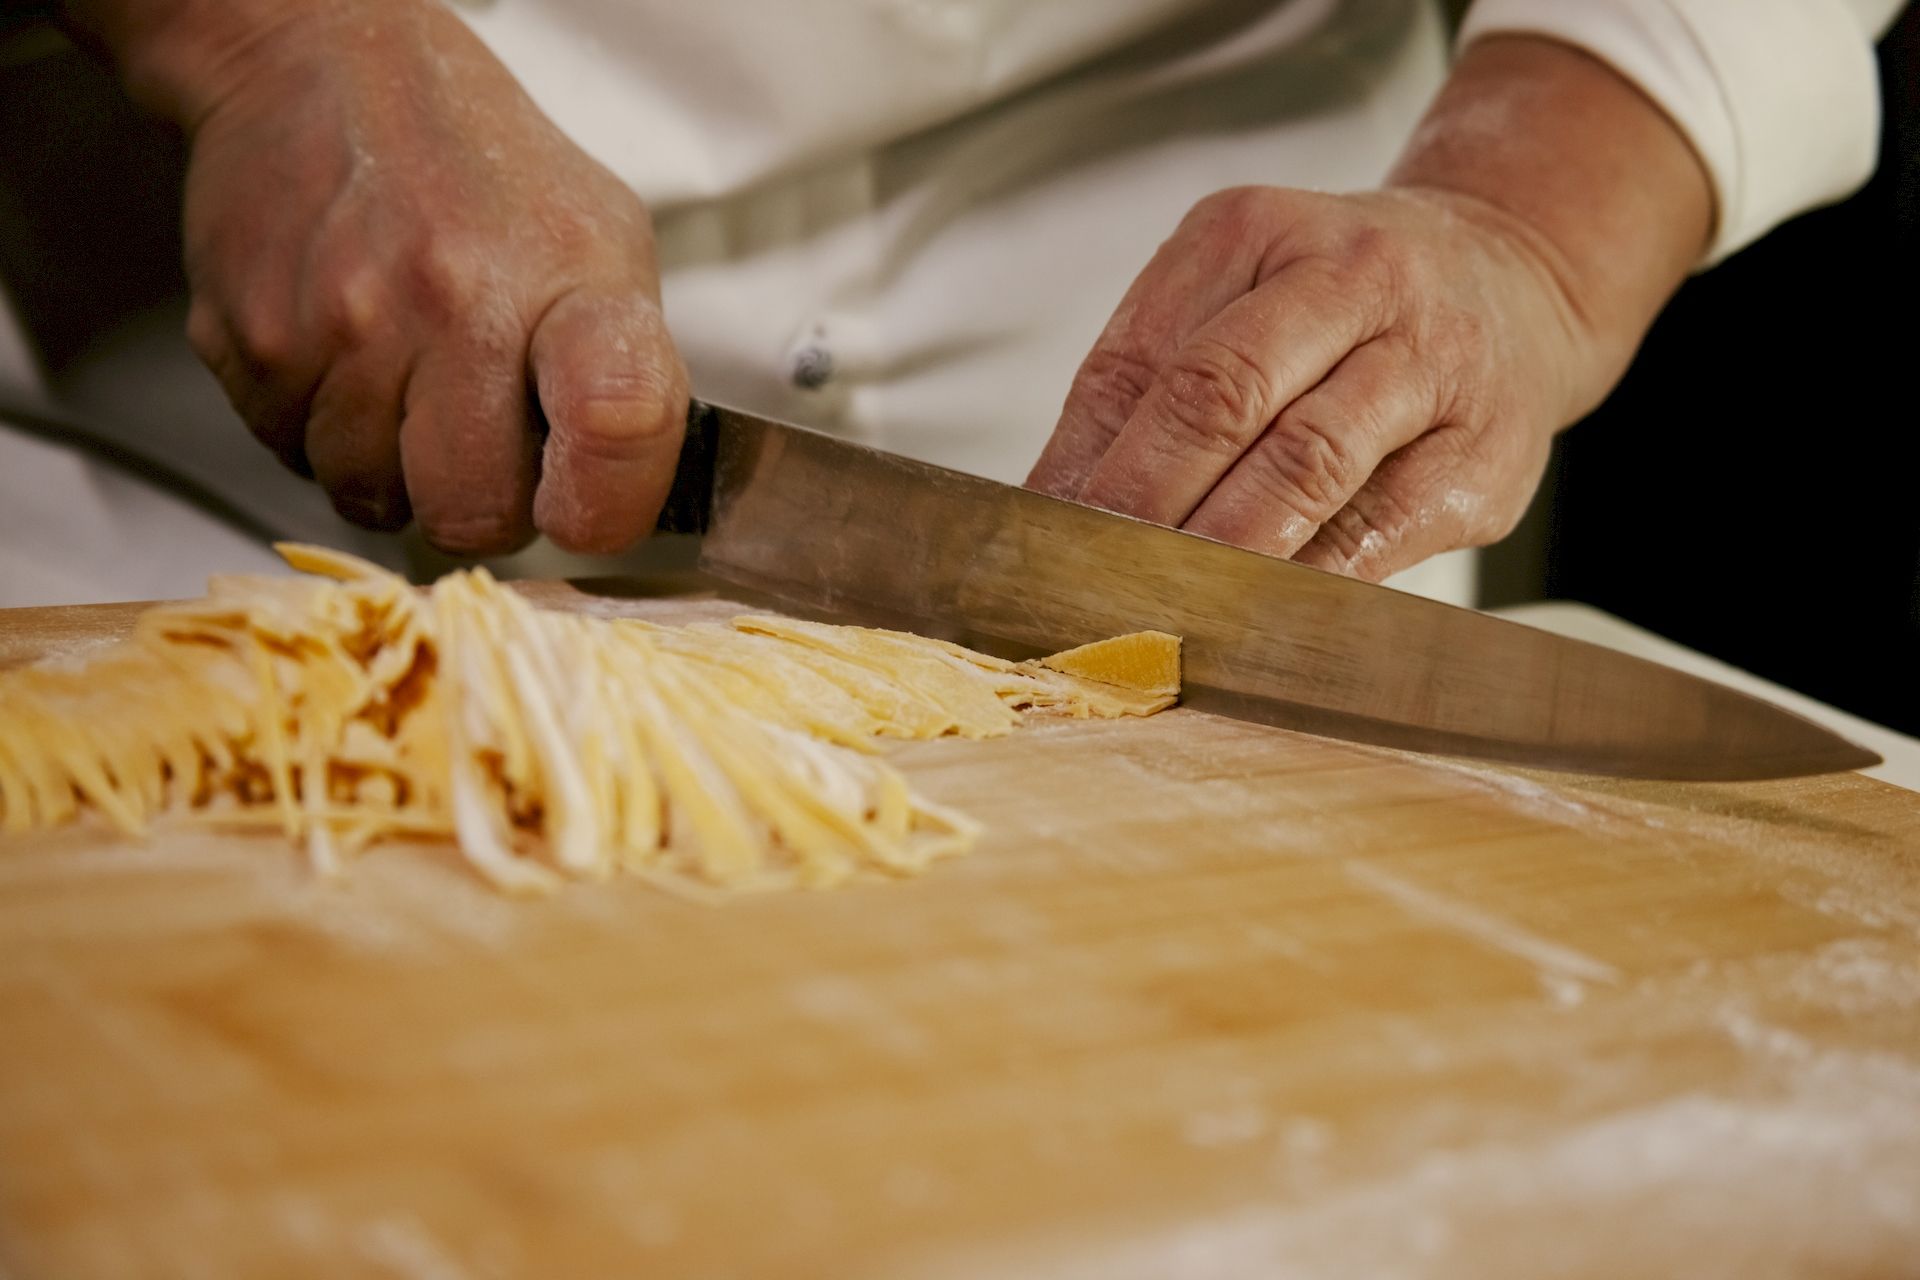 Aurora chef mentre taglia la massa durante preparazione piatto Tricolore fettuccine all'uovo di spinaci con funghi e tartufo del Ristorante La Tacchinella di Canzano a Teramo in Abruzzo